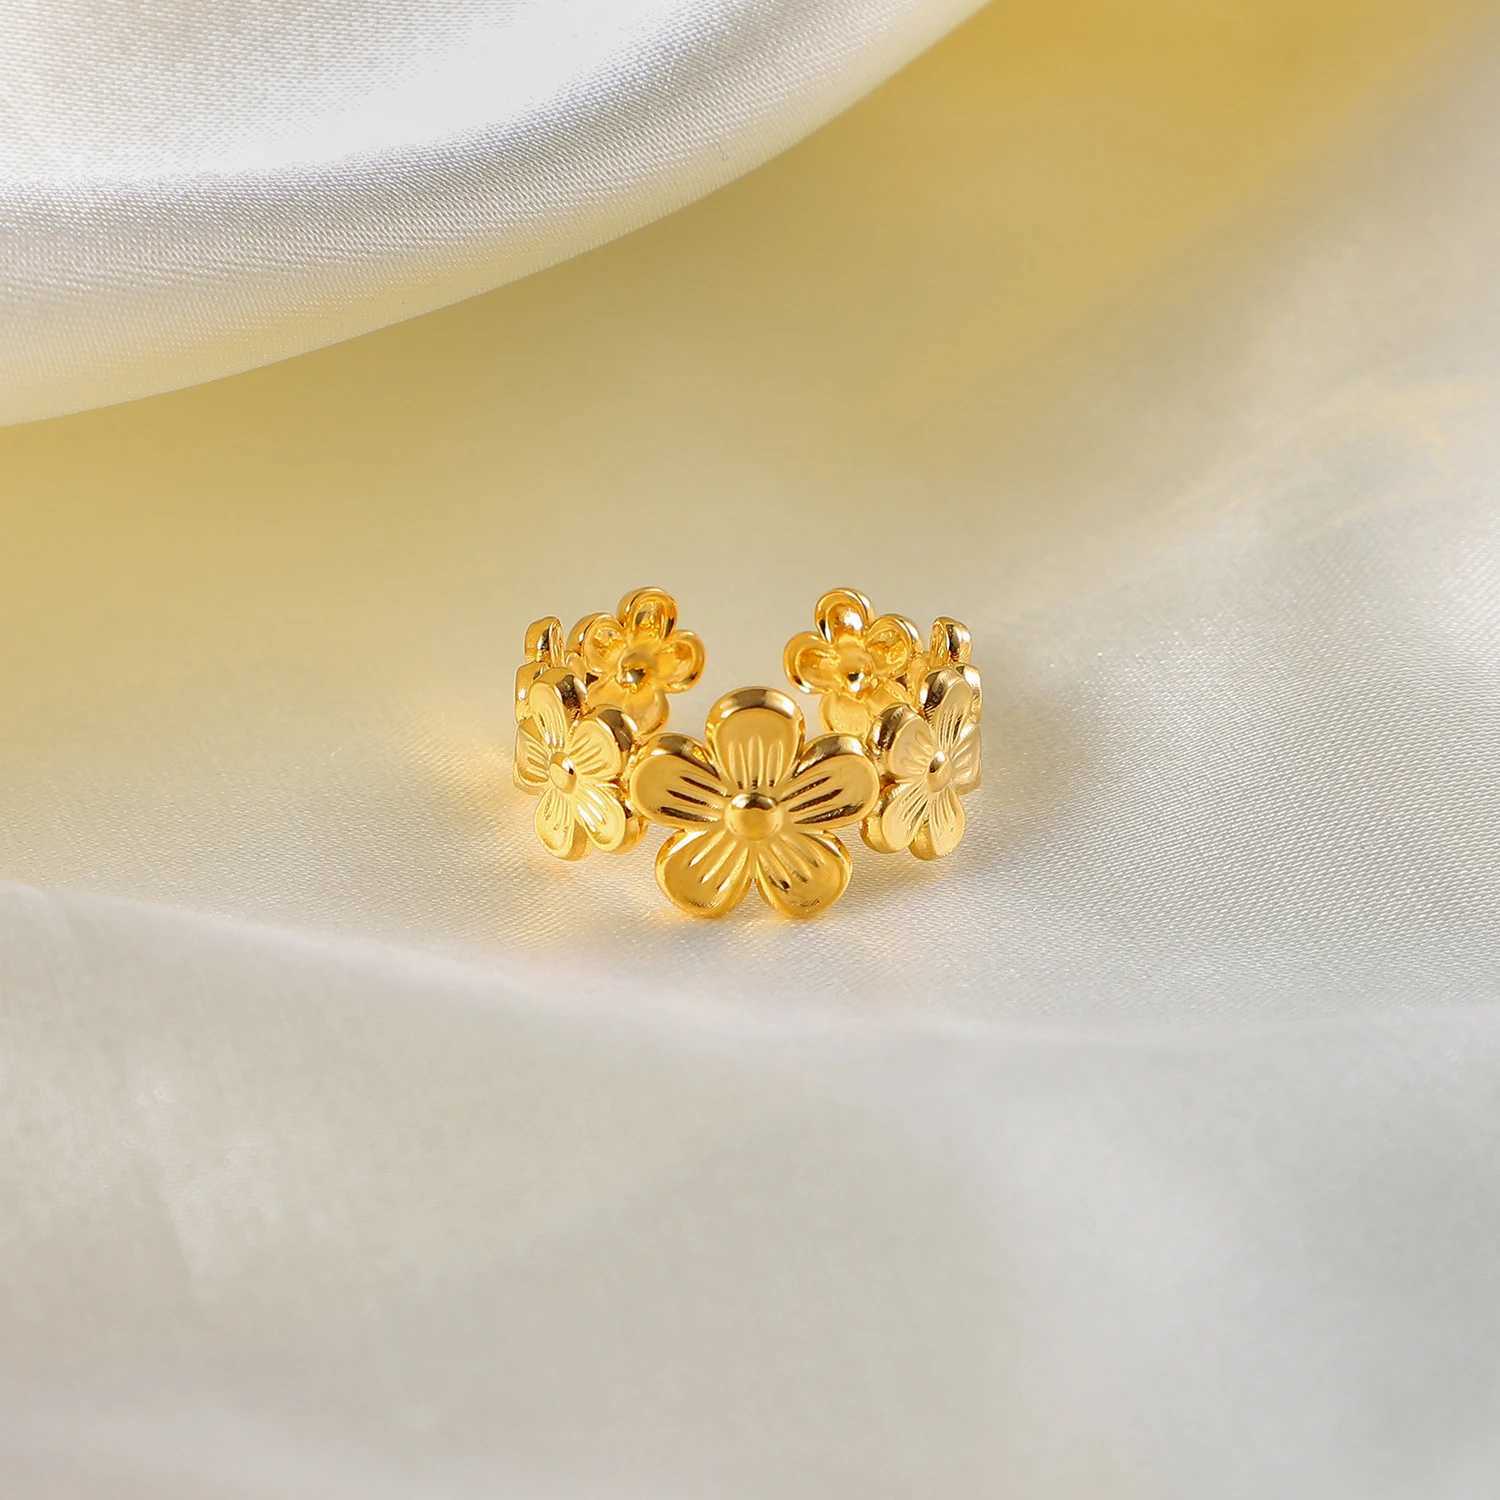 Anneaux de bande Bague d'ouverture réglable de fleur en acier inoxydable exquise bijoux de doigt imperméables galvanisés en or 18 carats PVD J240326